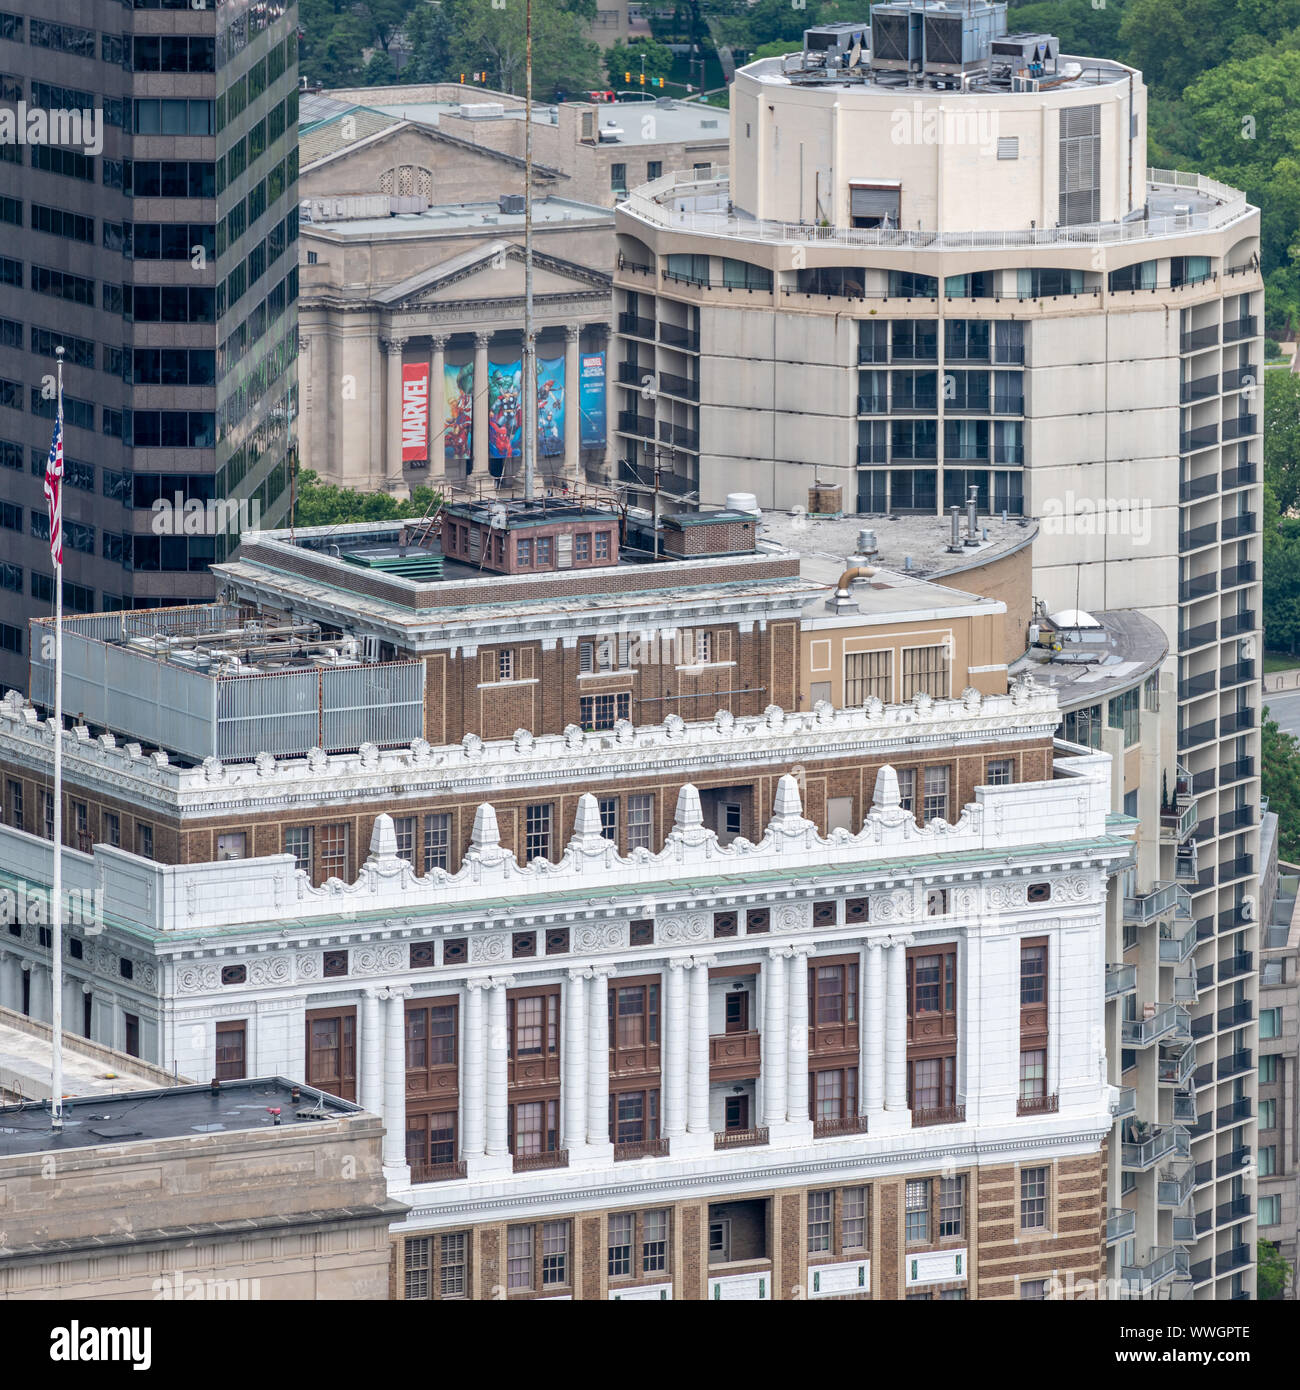 Gegensätzliche architektonische Stile sind typisch für die Philadelphia Center City Landschaft Stockfoto